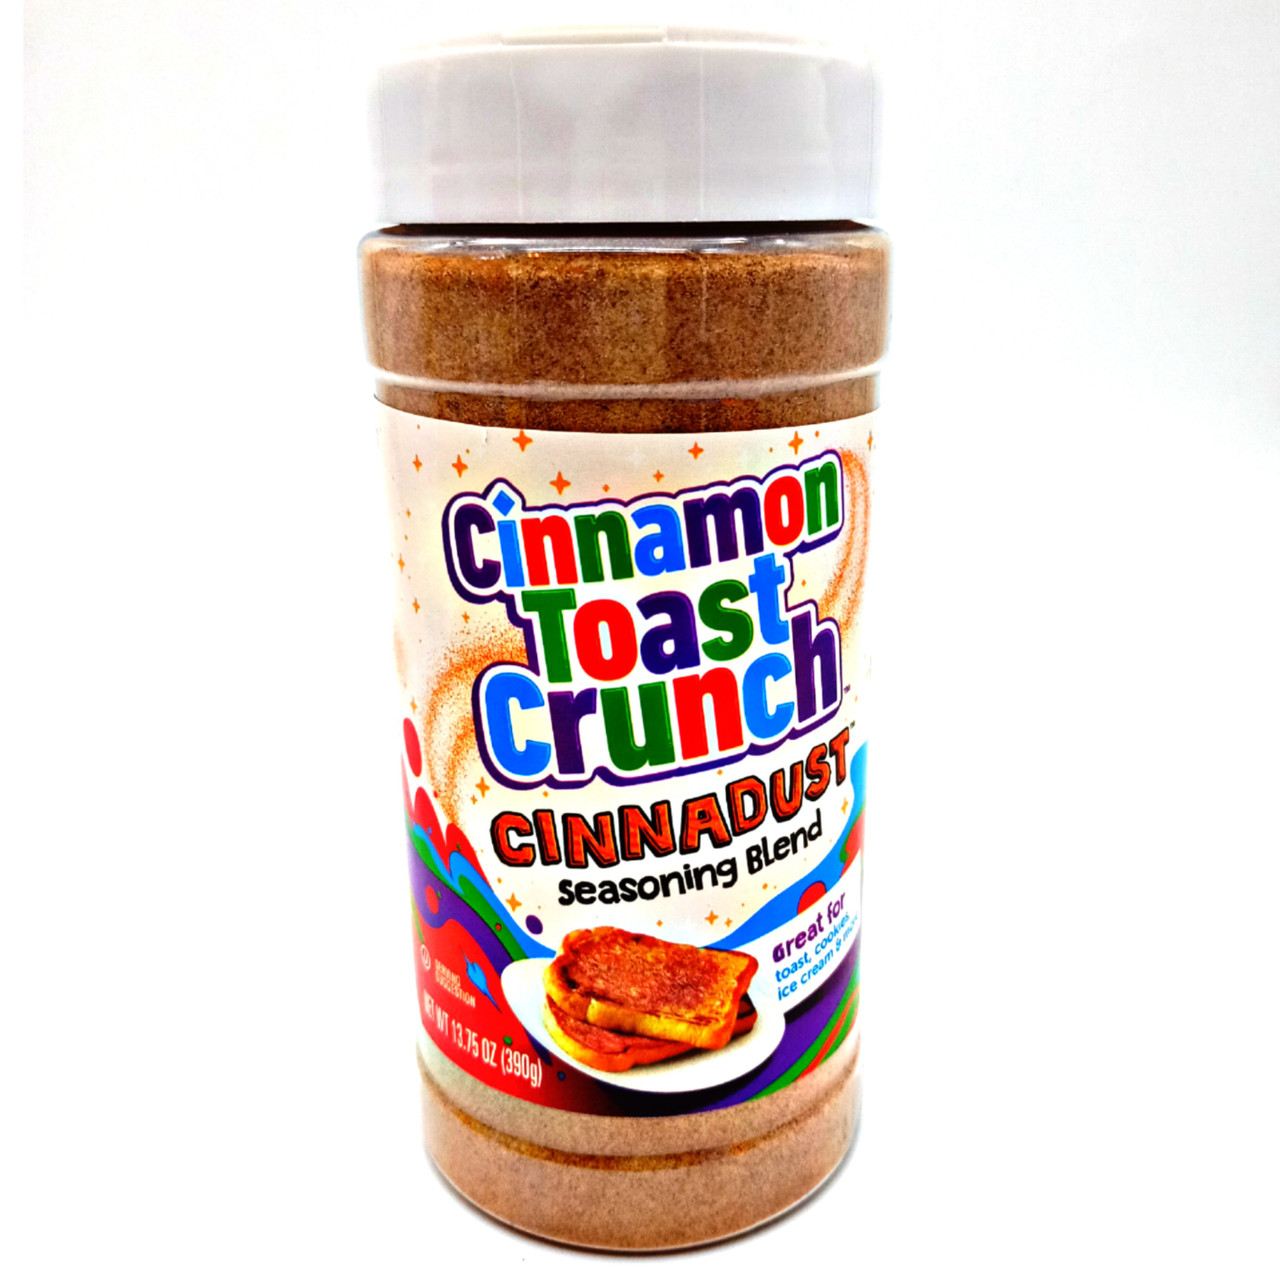 Tales of the Flowers: Cinnamon Toast Crunch Cinnadust seasoning